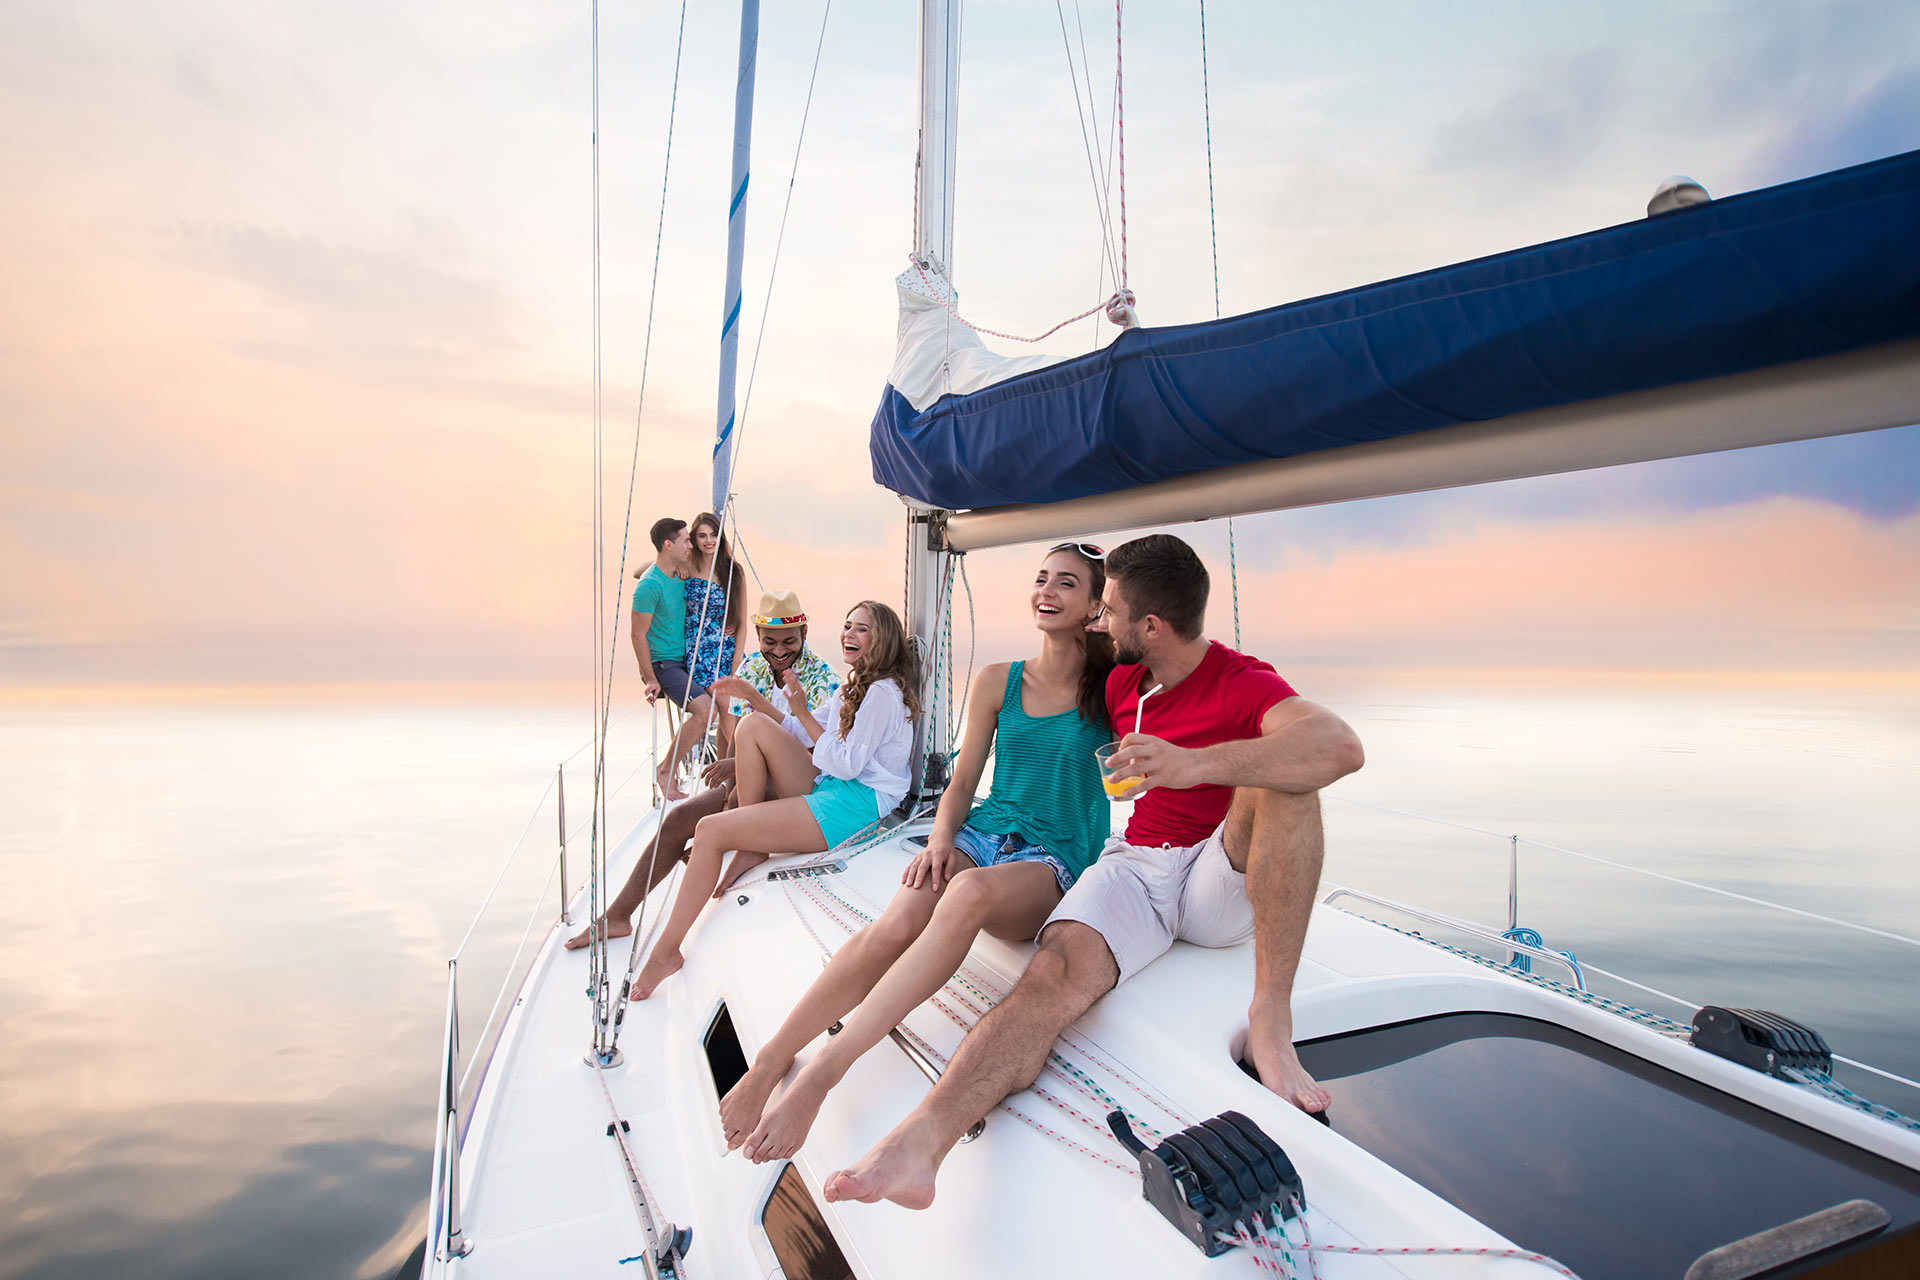 young-people-sitting-on-yacht-2021-08-30-08-26-25-utc.jpg